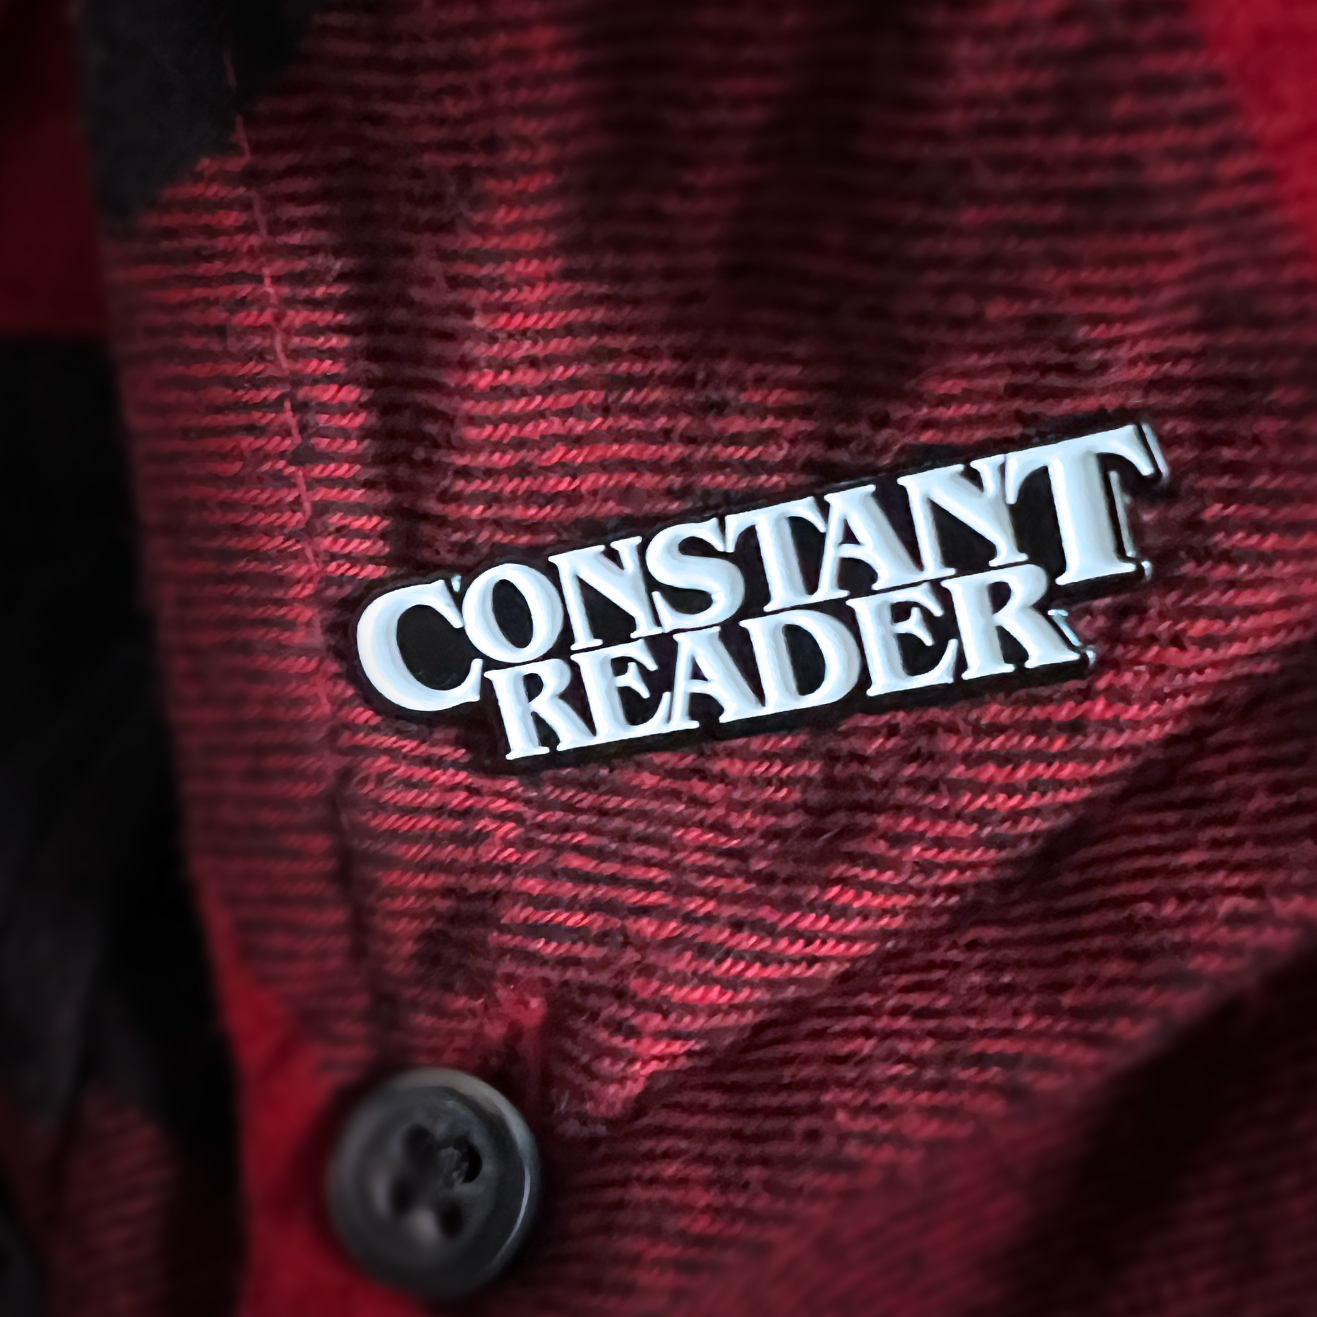 Constant Reader - Enamel Pin